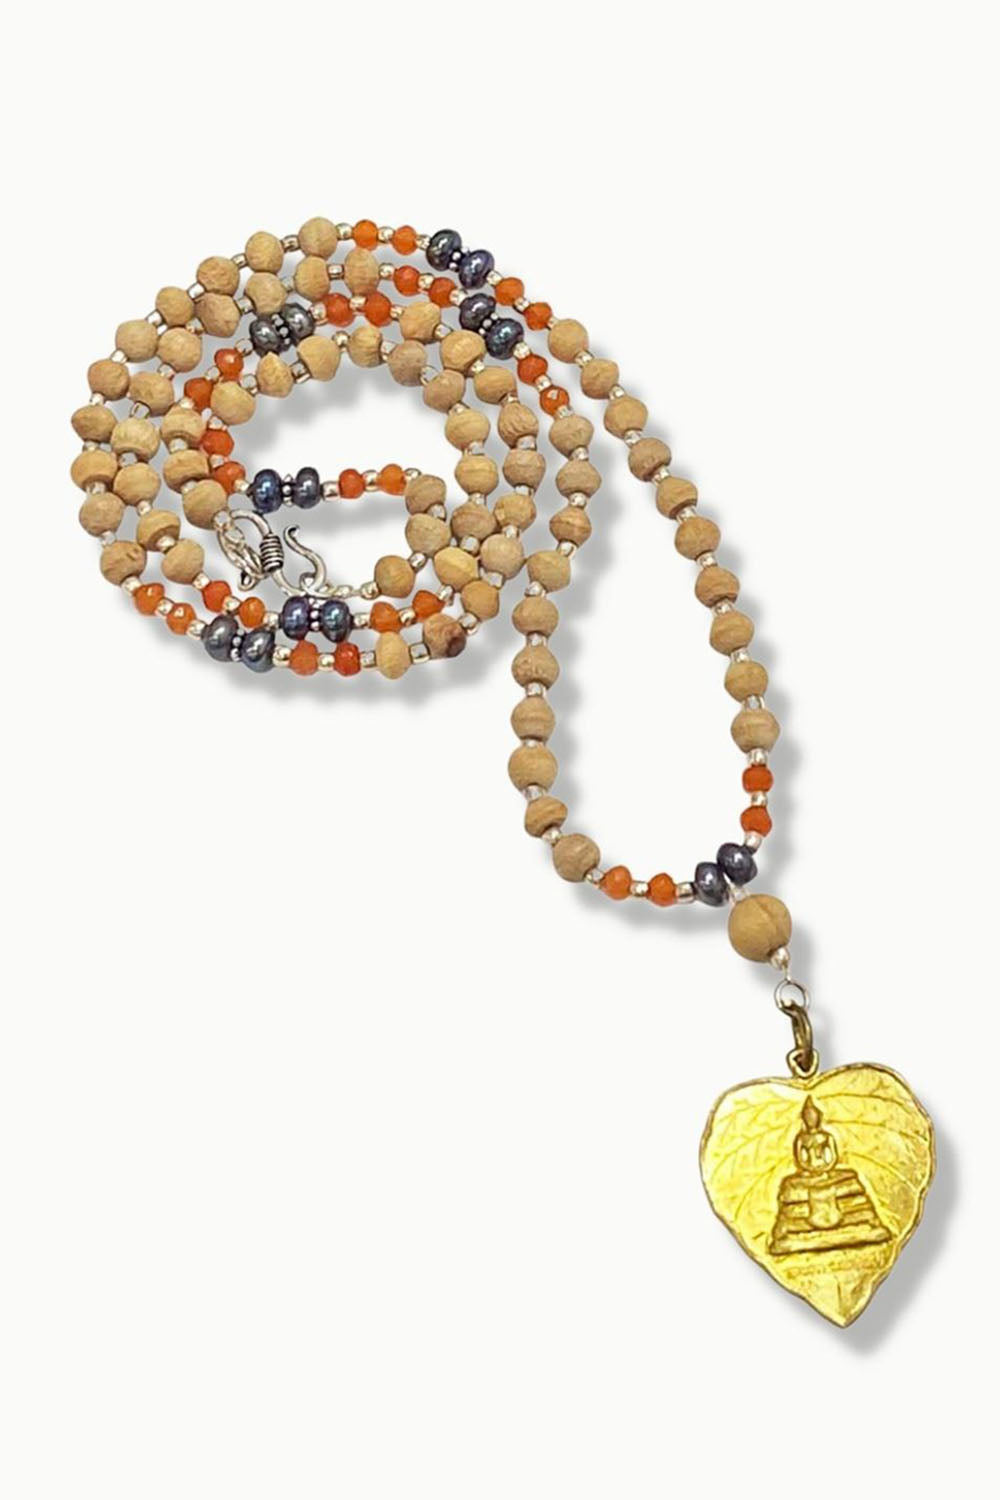 Healing Buddha Amulet 108 Tulsi Beads Mala